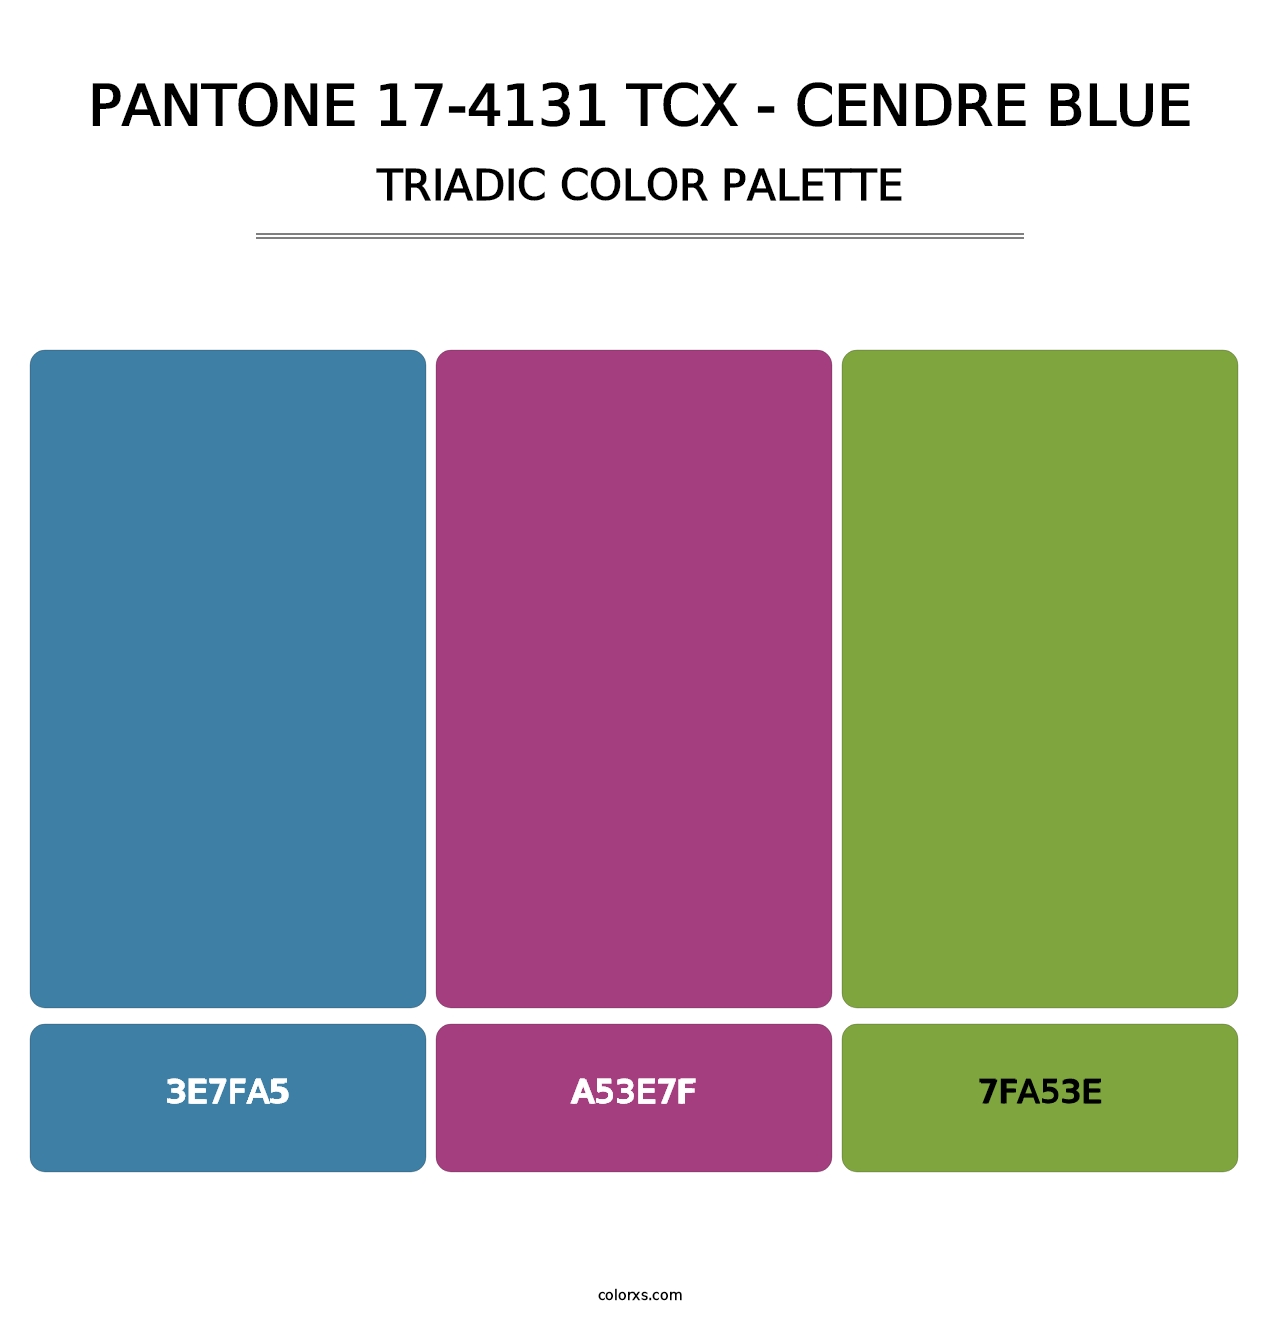 PANTONE 17-4131 TCX - Cendre Blue - Triadic Color Palette